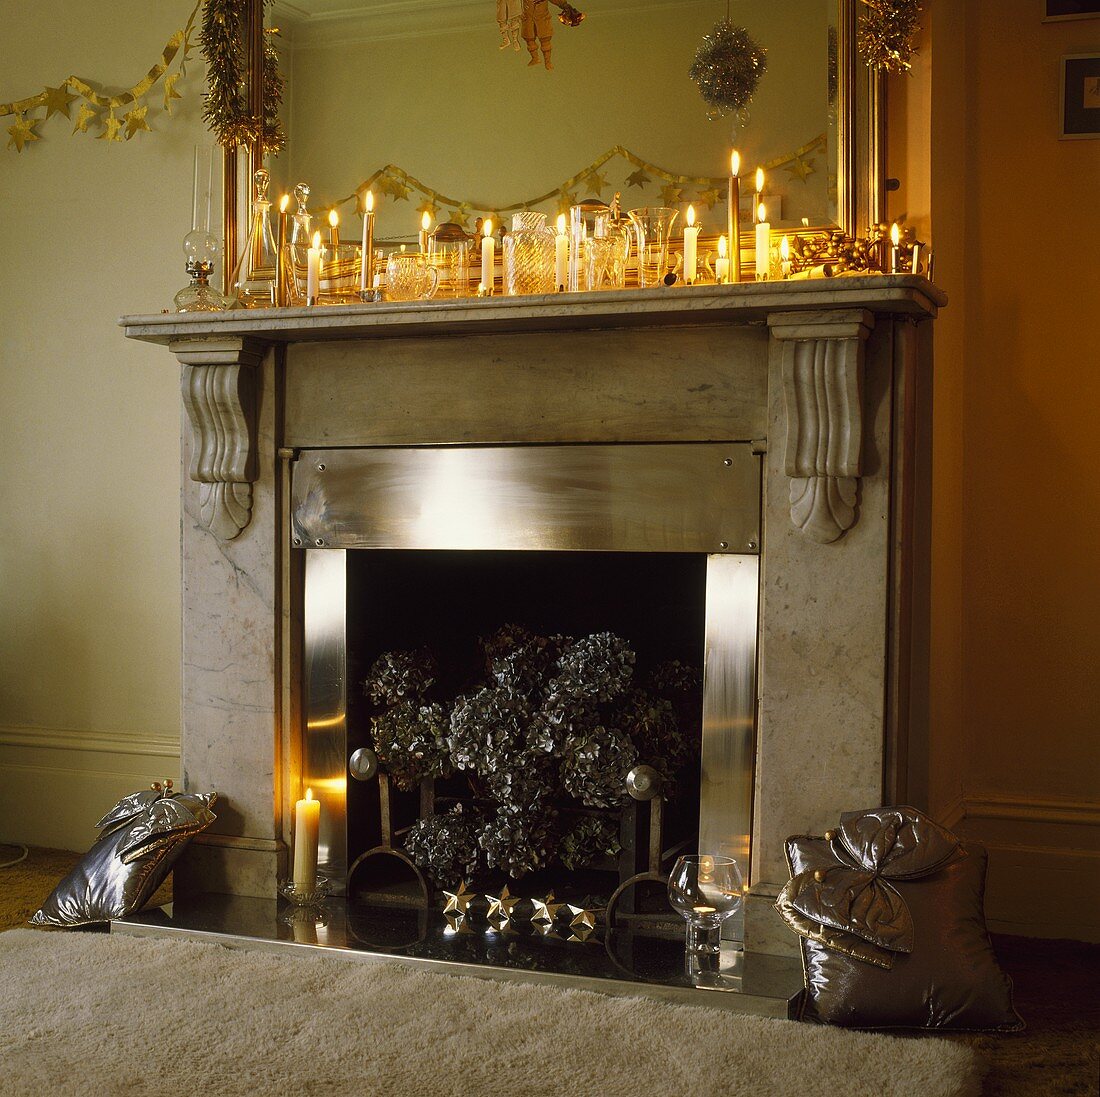 Viele brennende Kerzen und Weihnachtsdekoration auf Marmorkamin mit Edelstahlrahmen